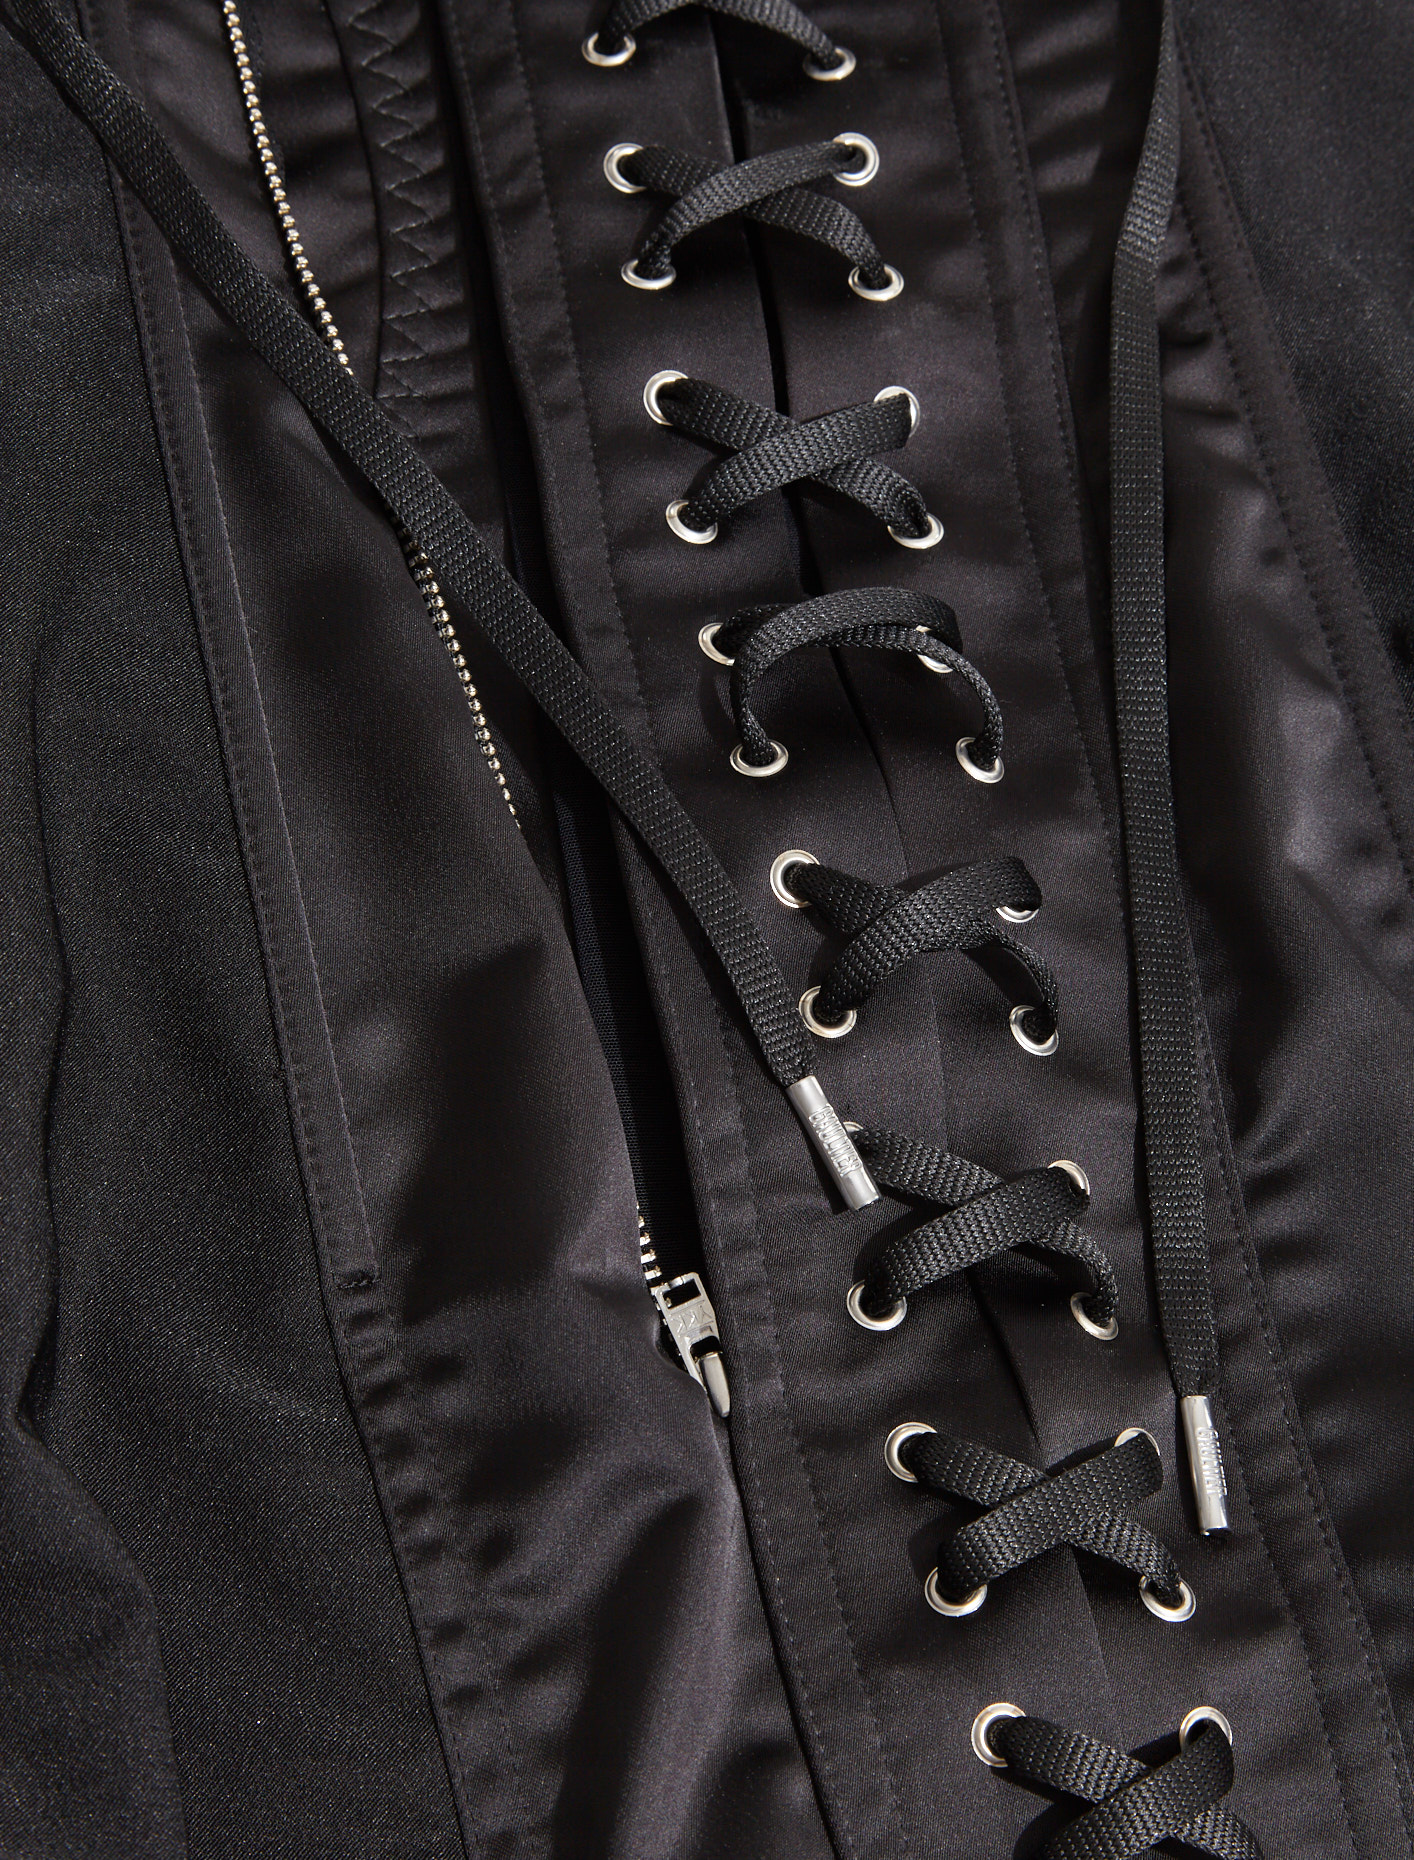 Jean Paul Gaultier Conical Corset Dress in Black | Voo Store Berlin ...